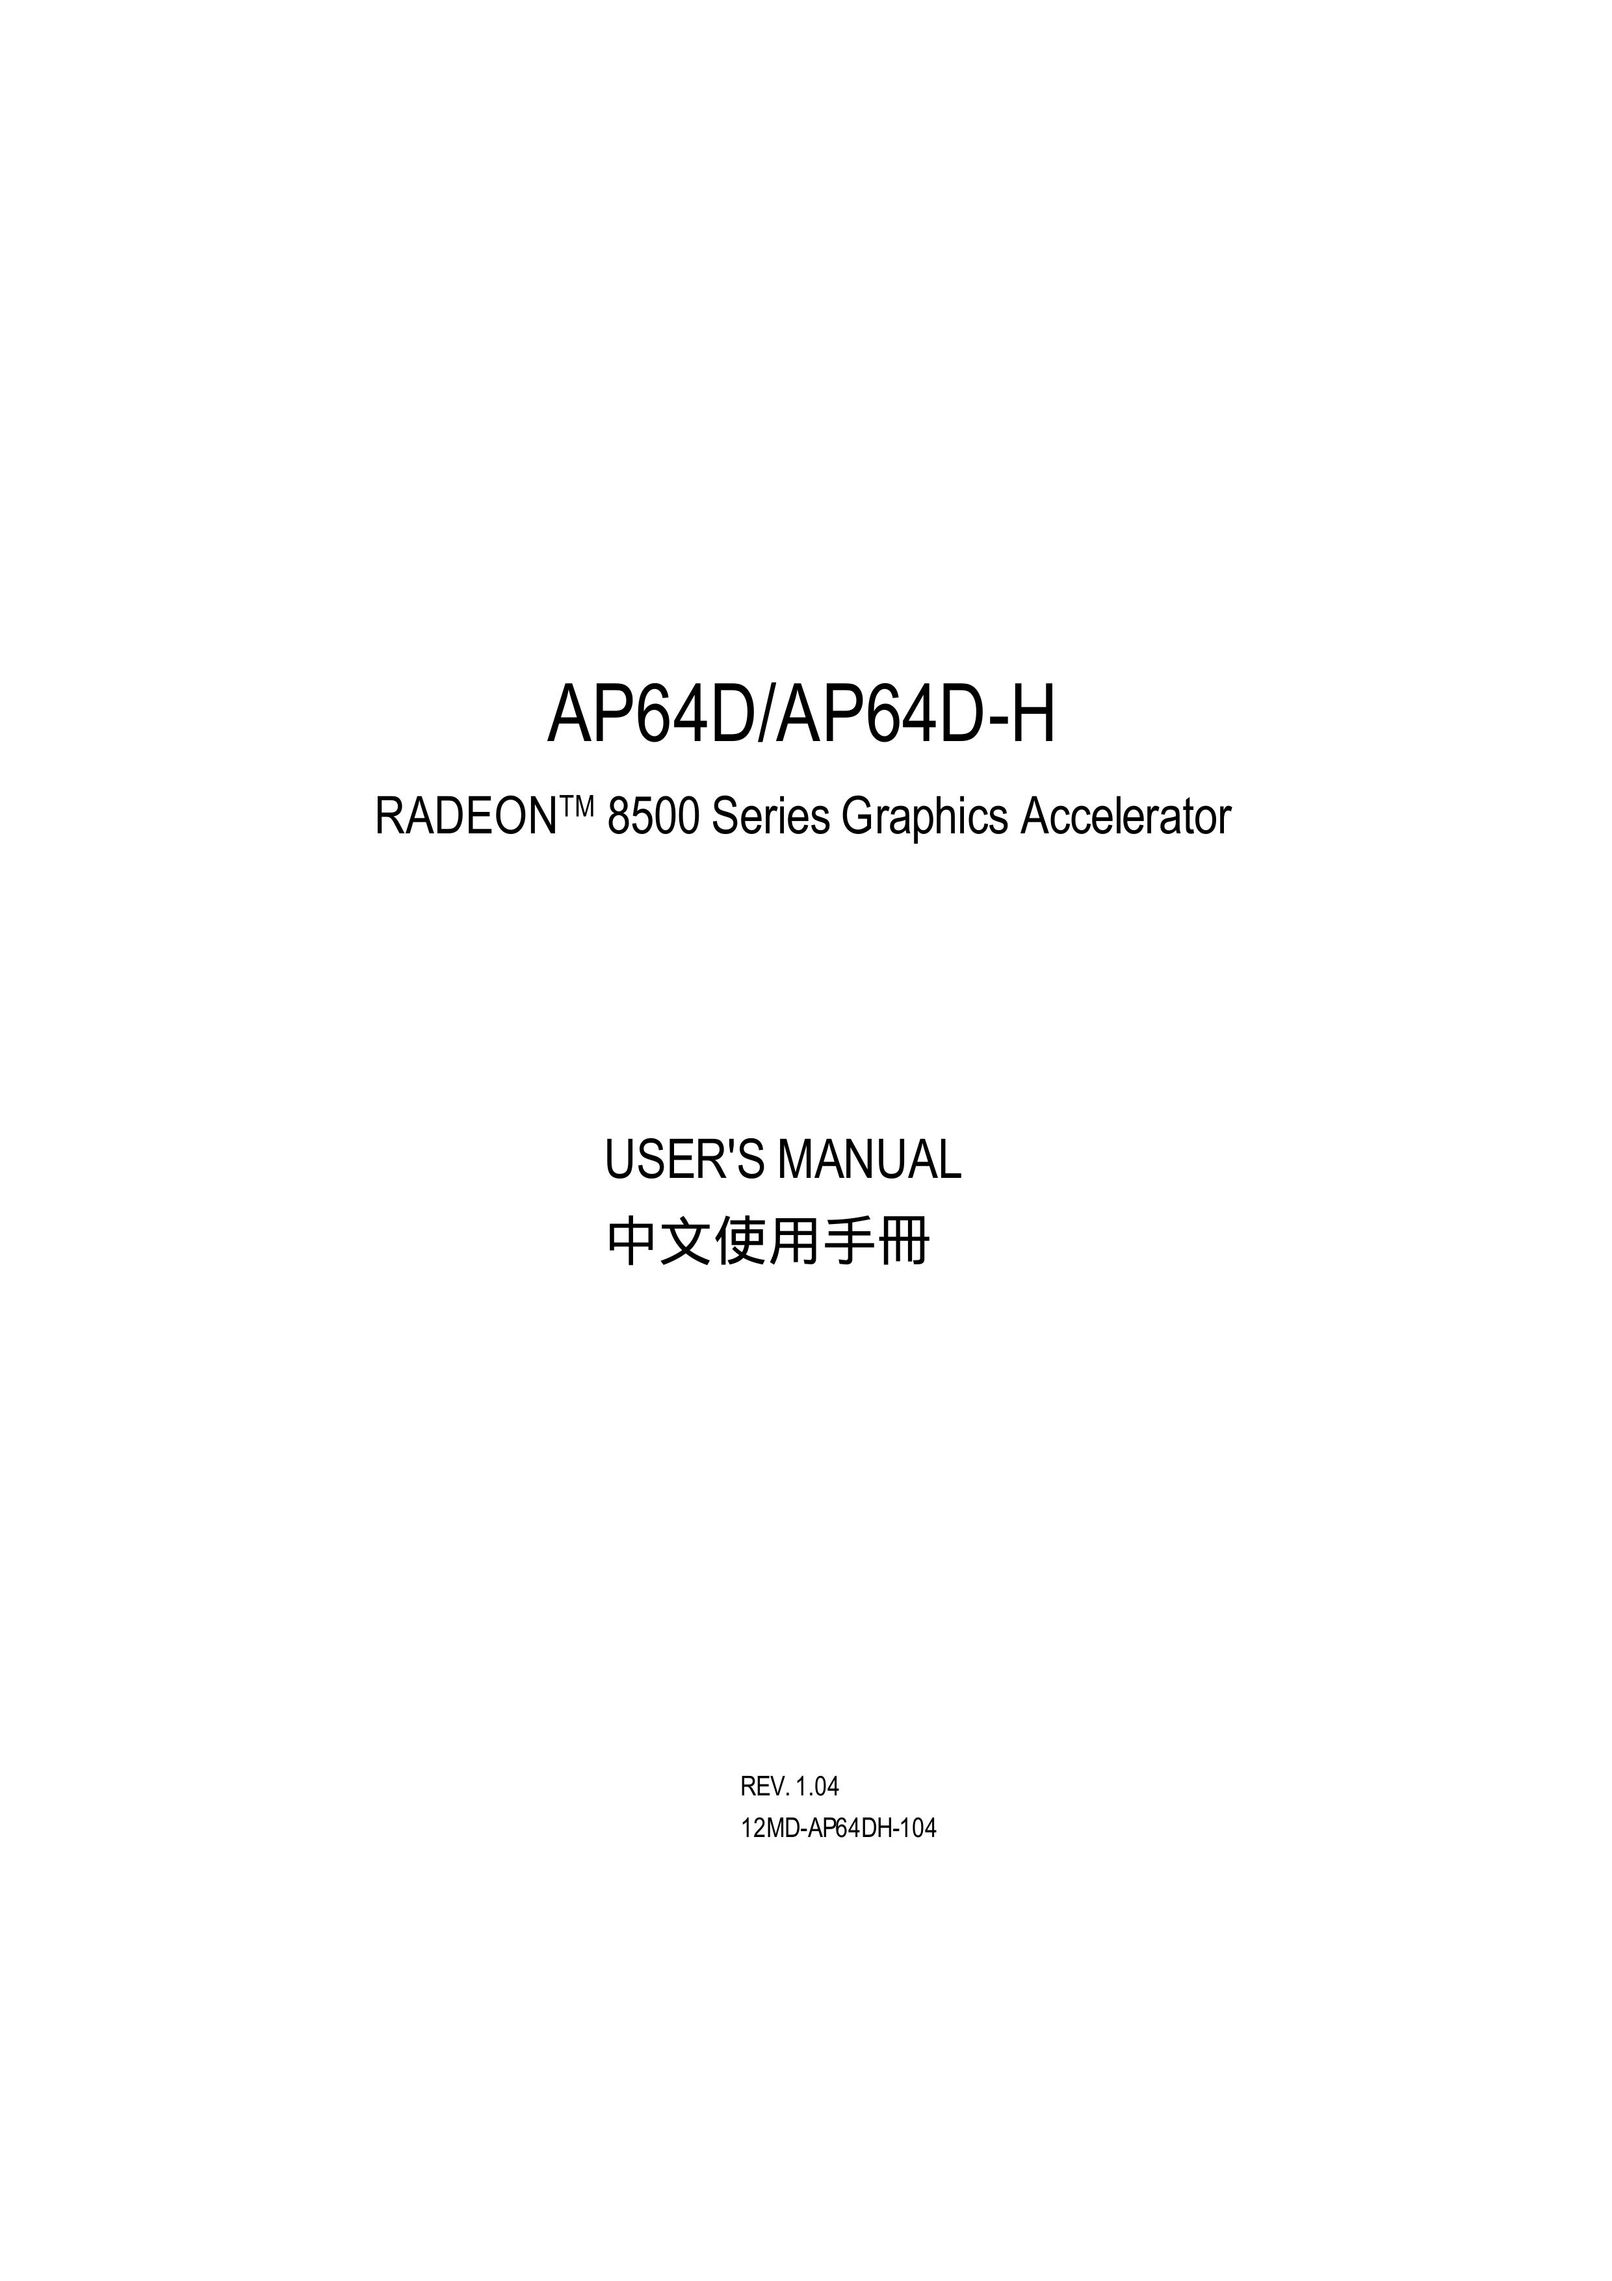 Gigabyte AP64D Server User Manual